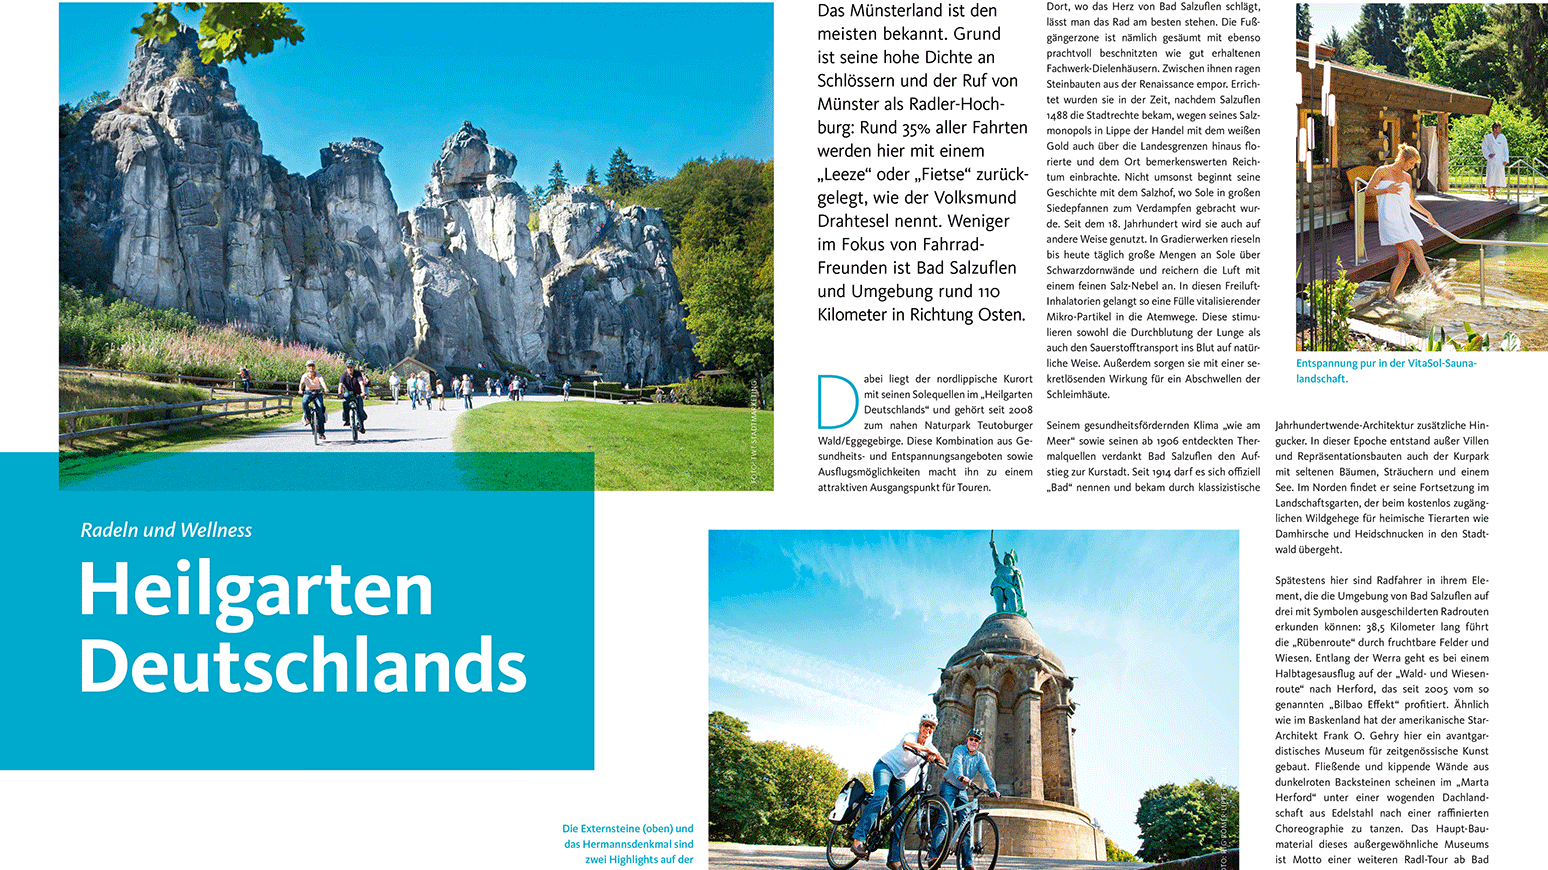 Reise: Heilgarten Deutschlands